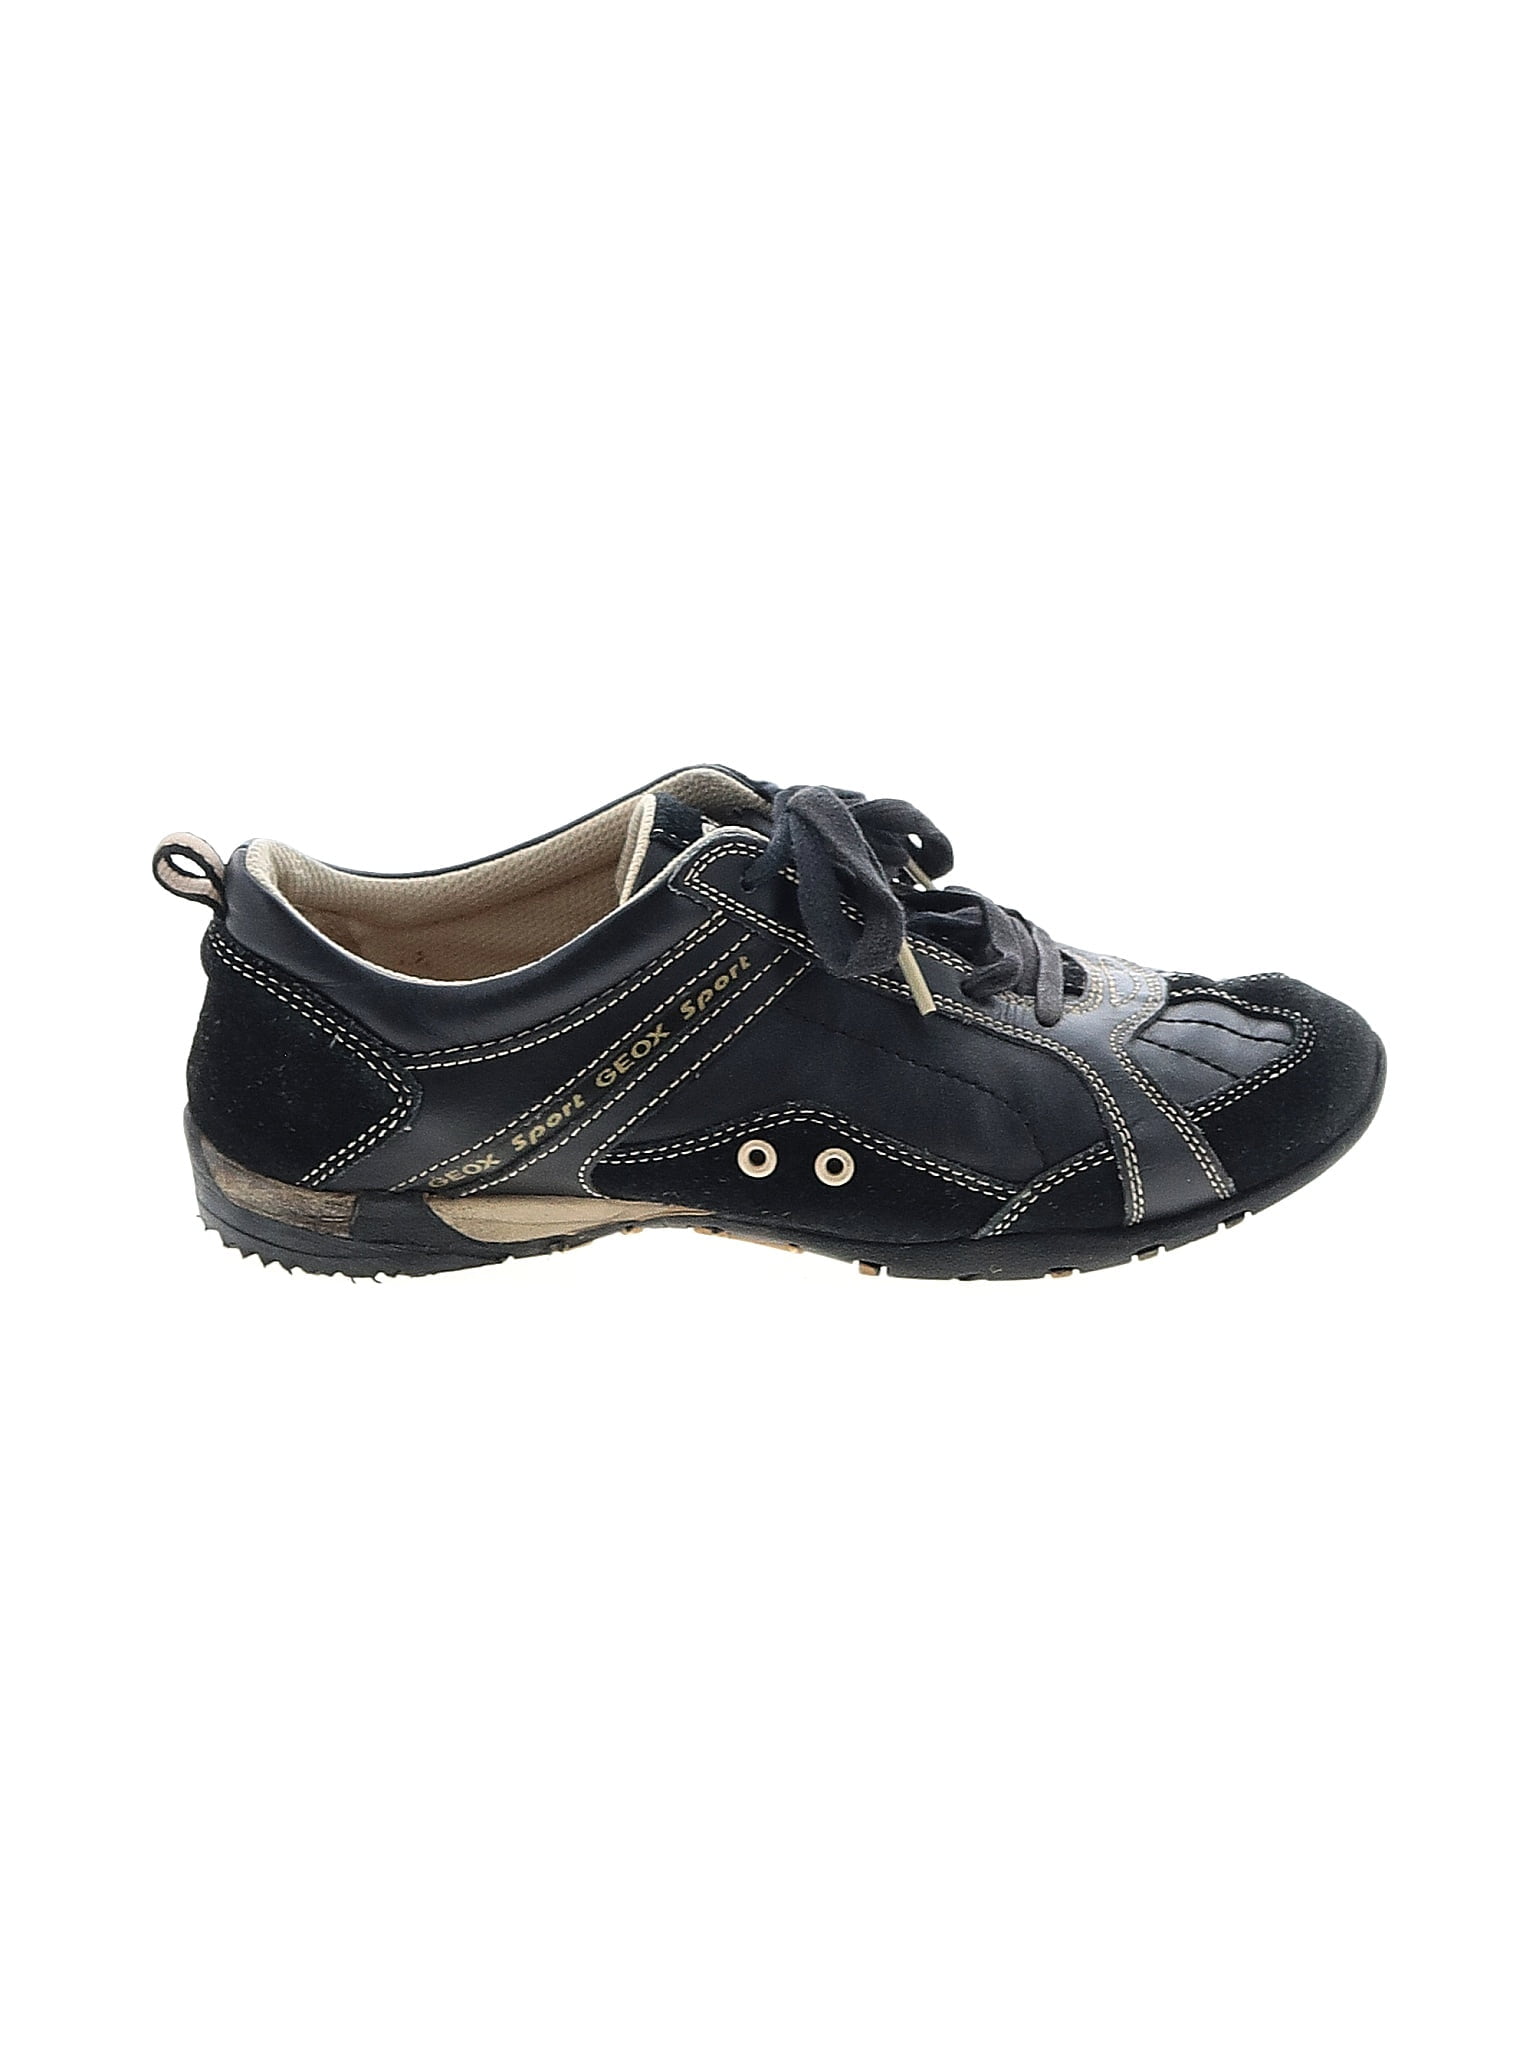 geox respira womens shoes size uk 3 eu 36  eBay